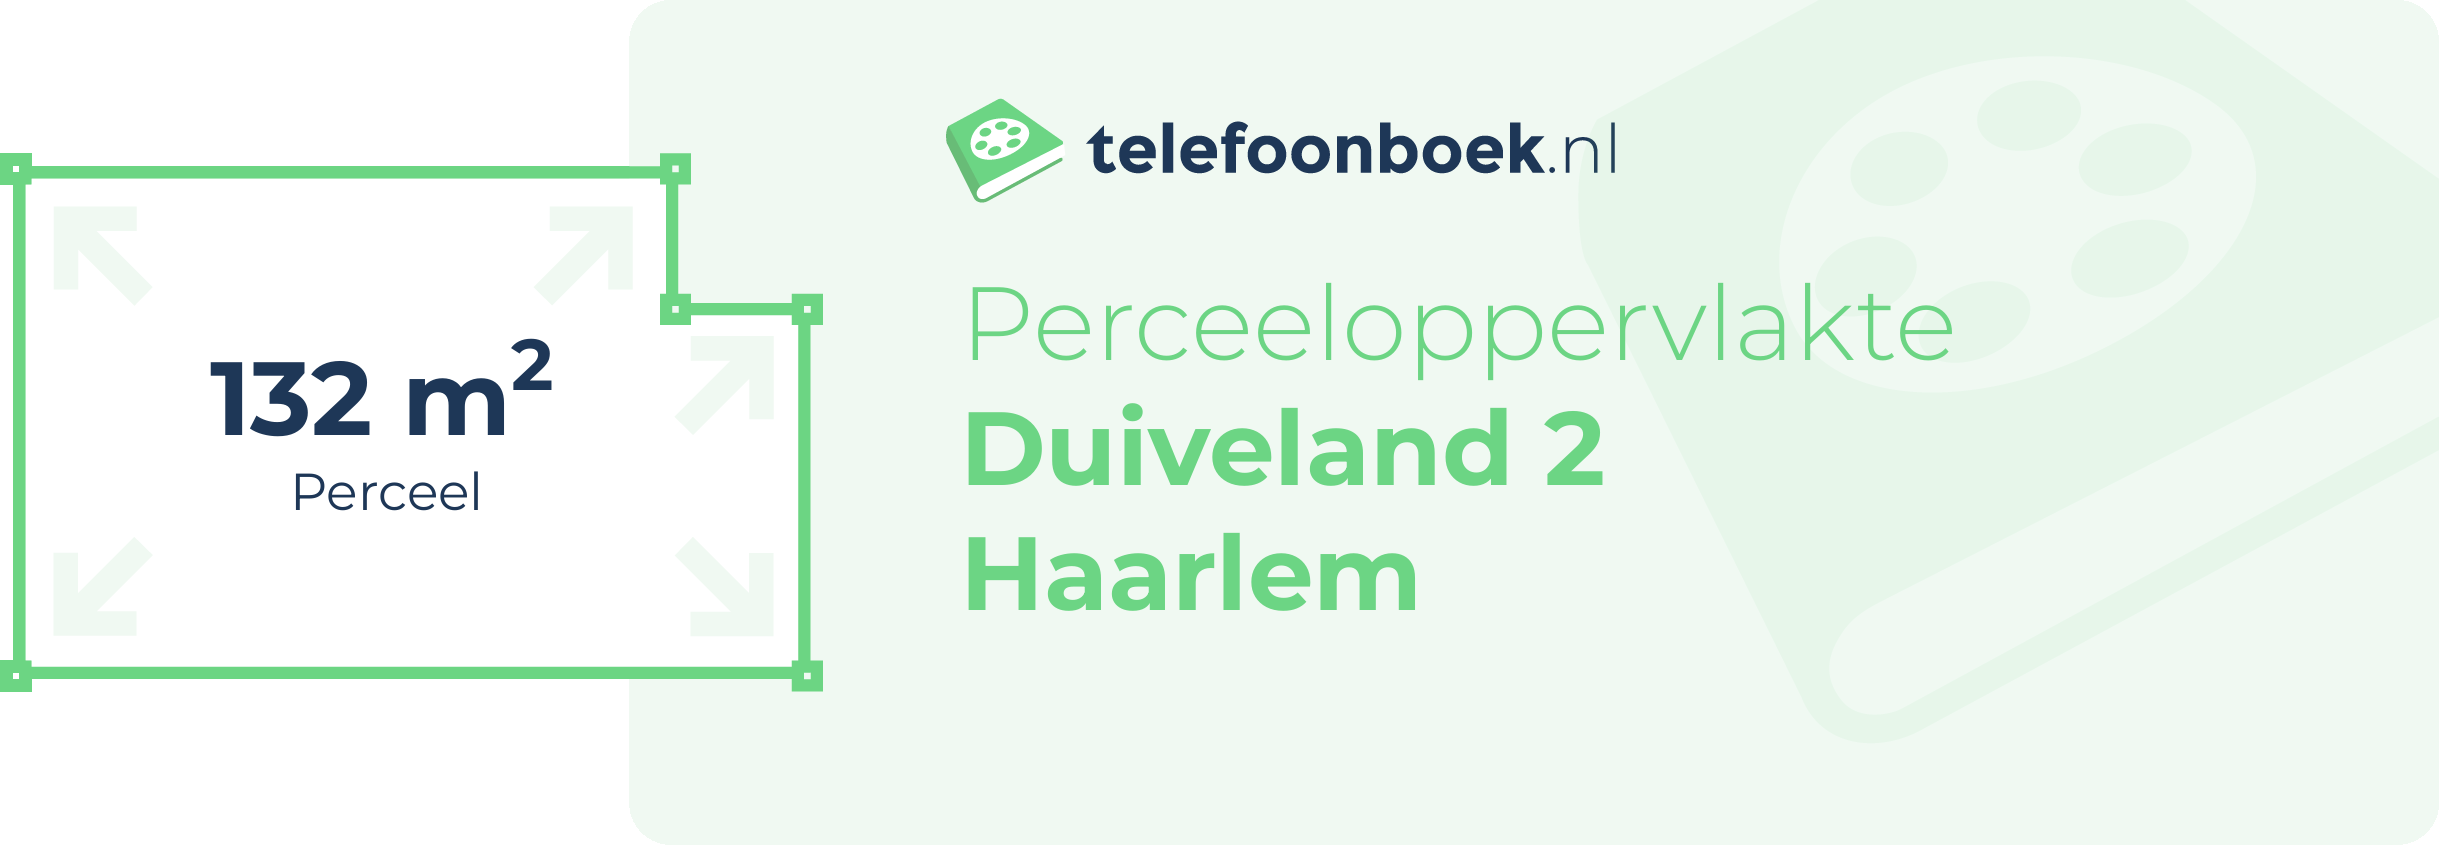 Perceeloppervlakte Duiveland 2 Haarlem